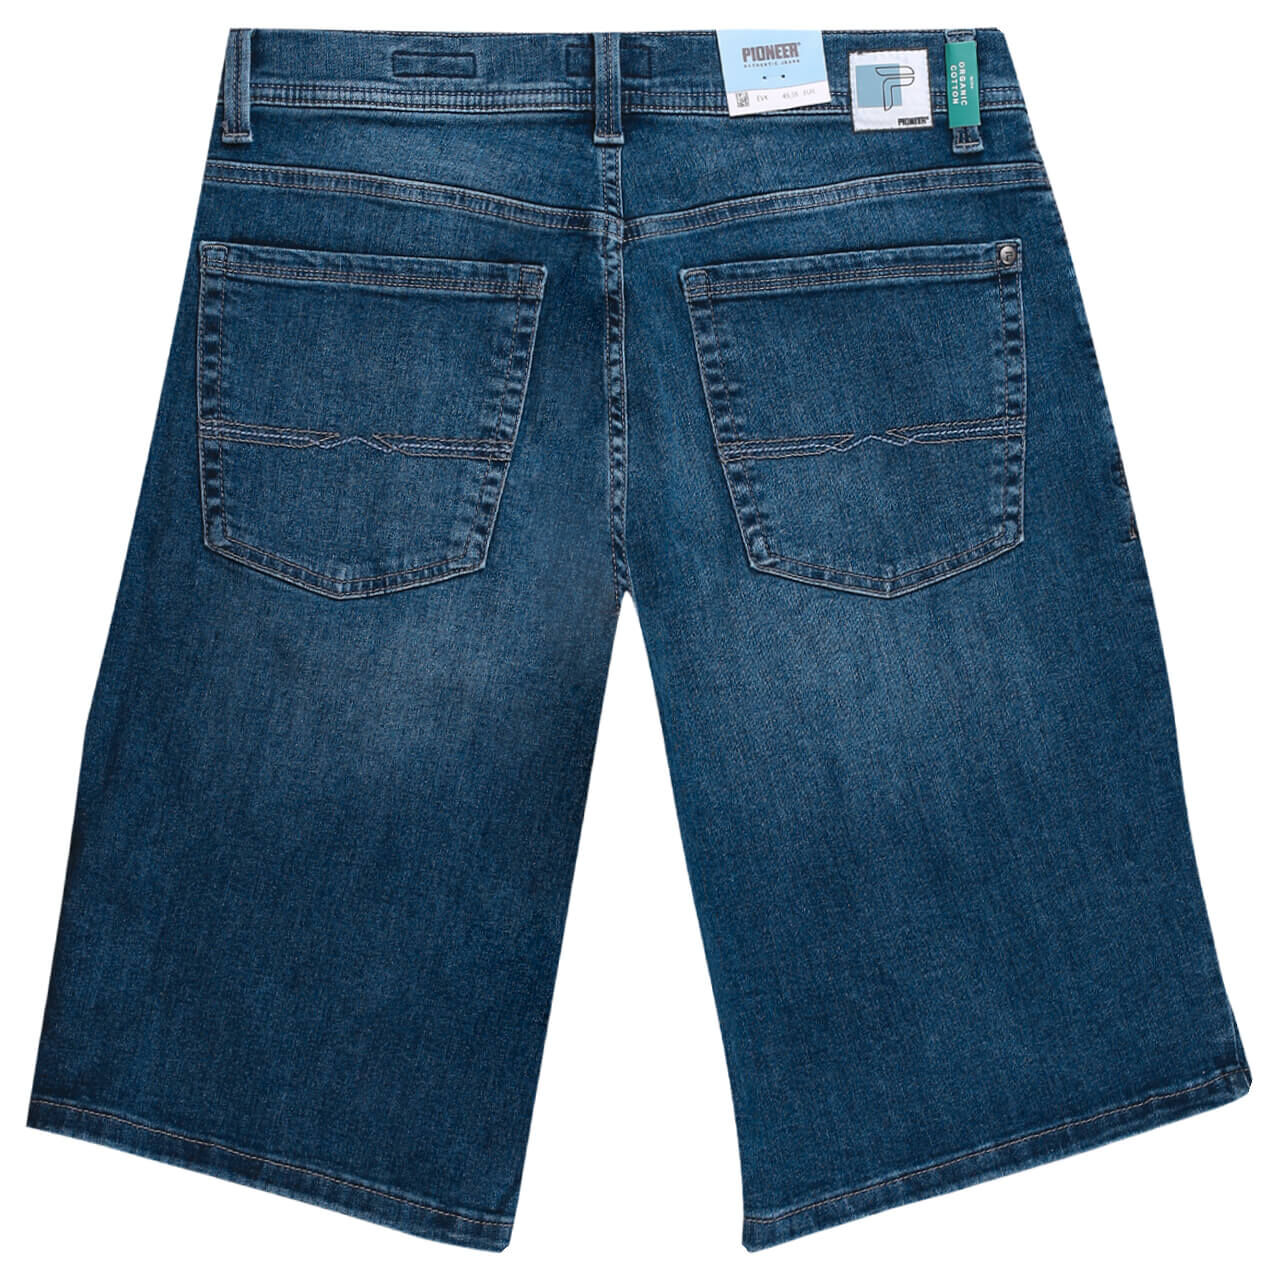 Pioneer Jeans Finn Megaflex Bermuda für Herren in Blau angewaschen, FarbNr.: 6832